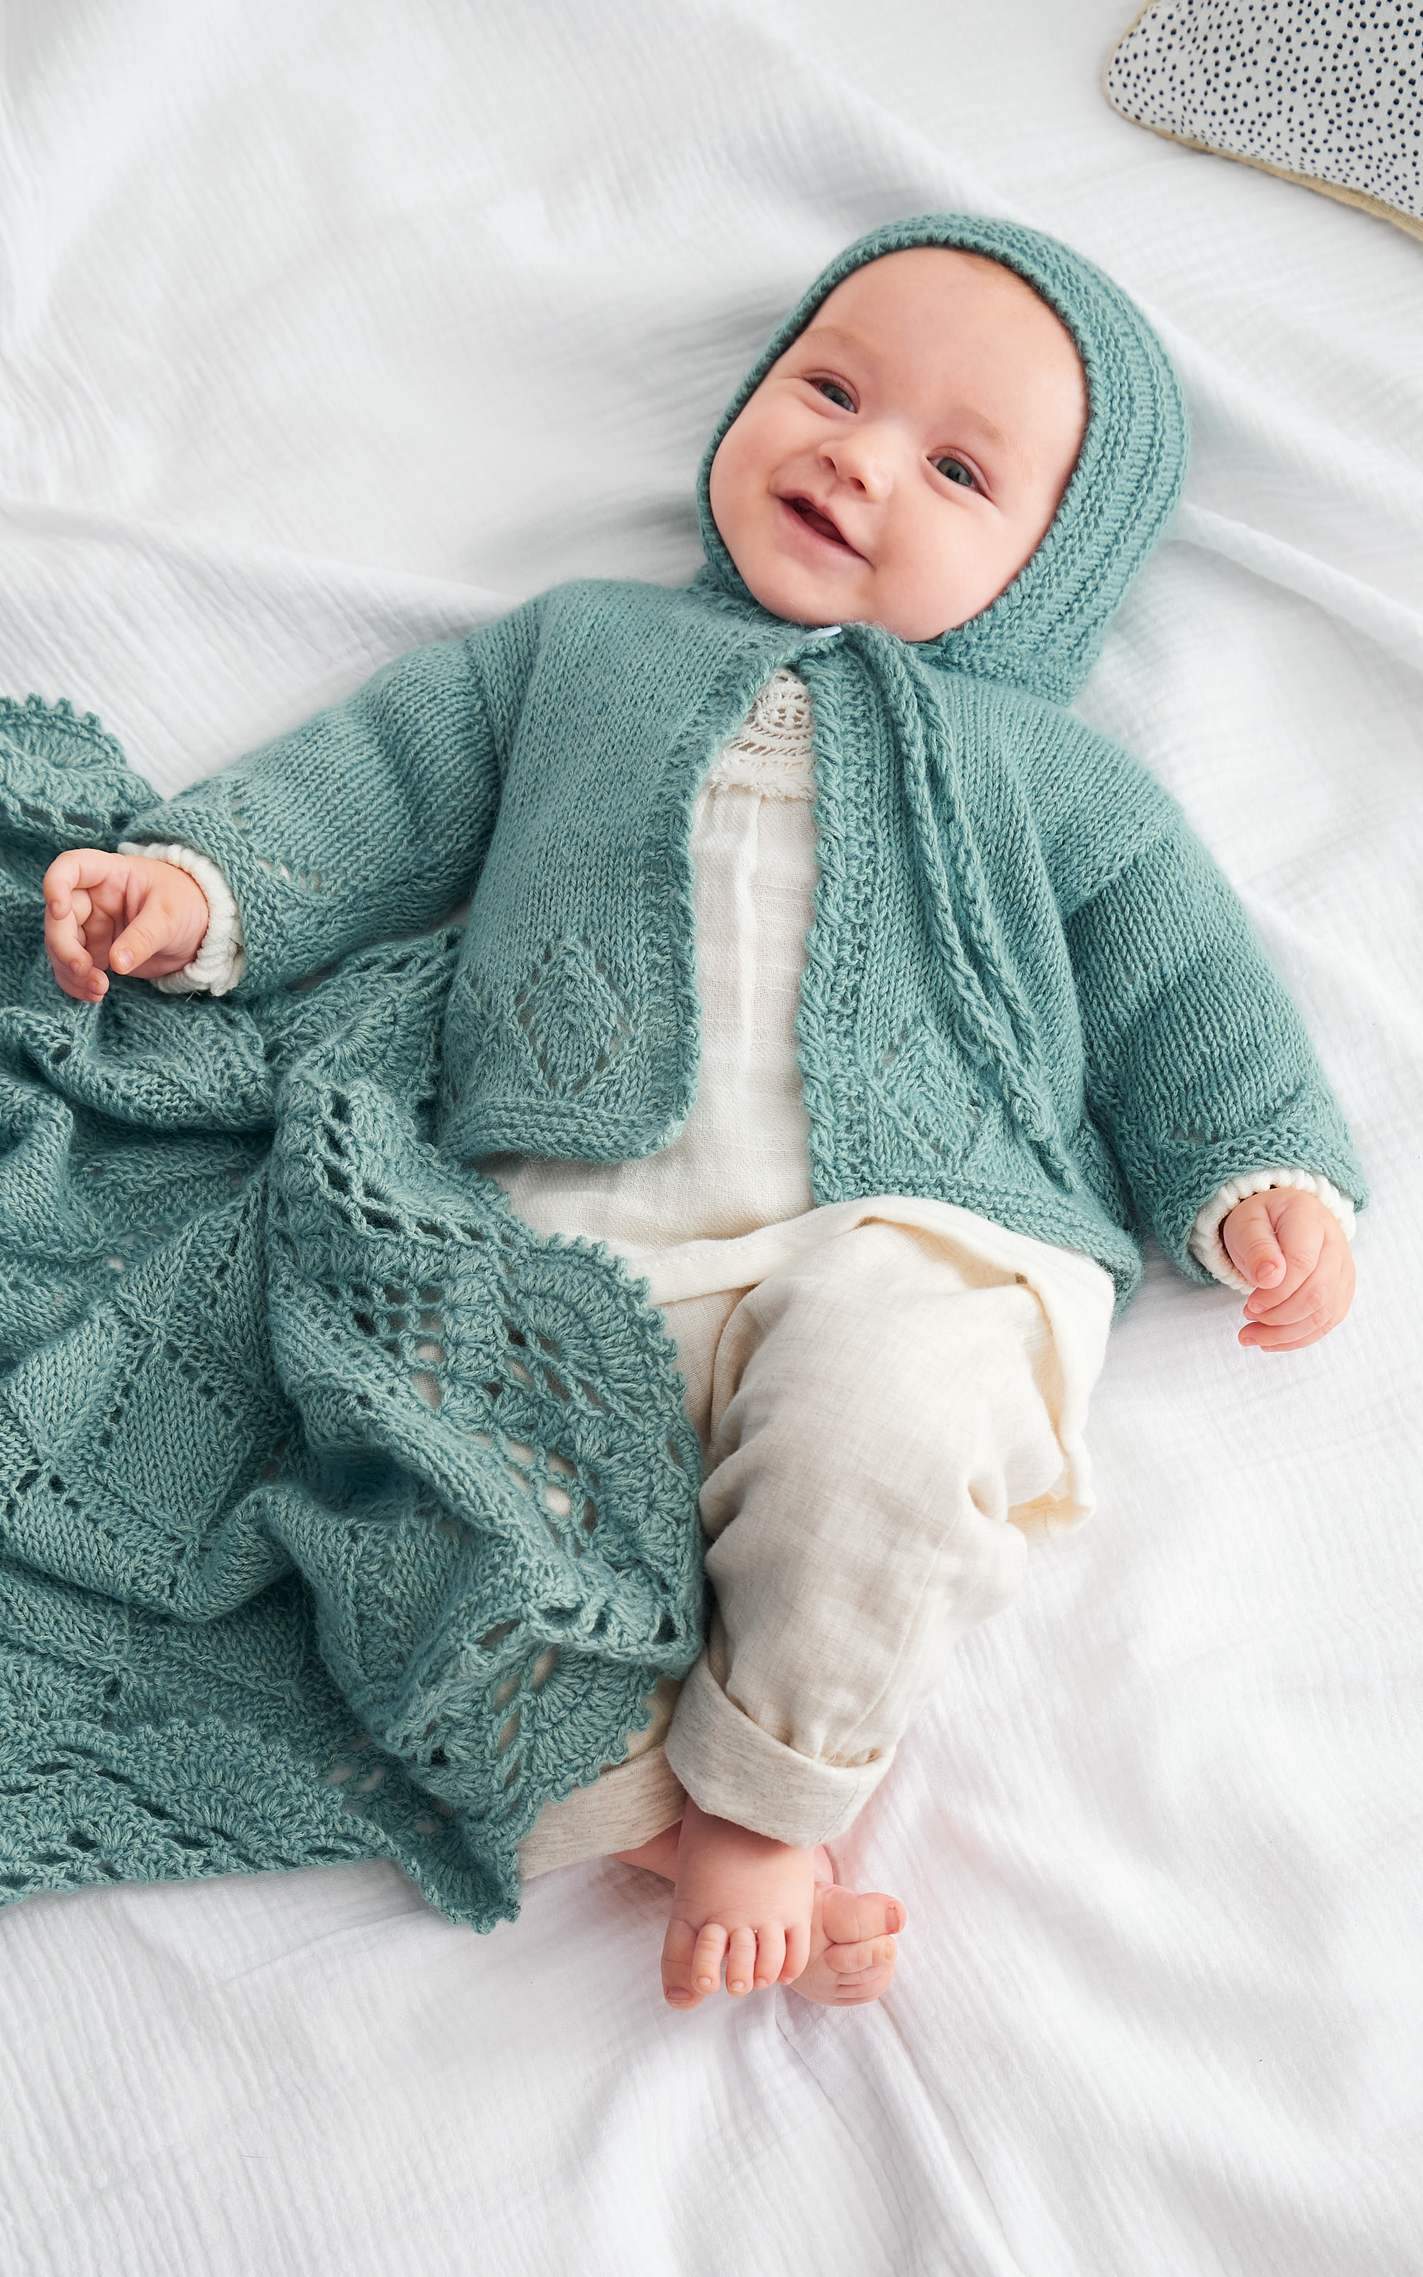 Kuschelige Baby Mütze - Strickset von LANA GROSSA jetzt online kaufen bei OONIQUE